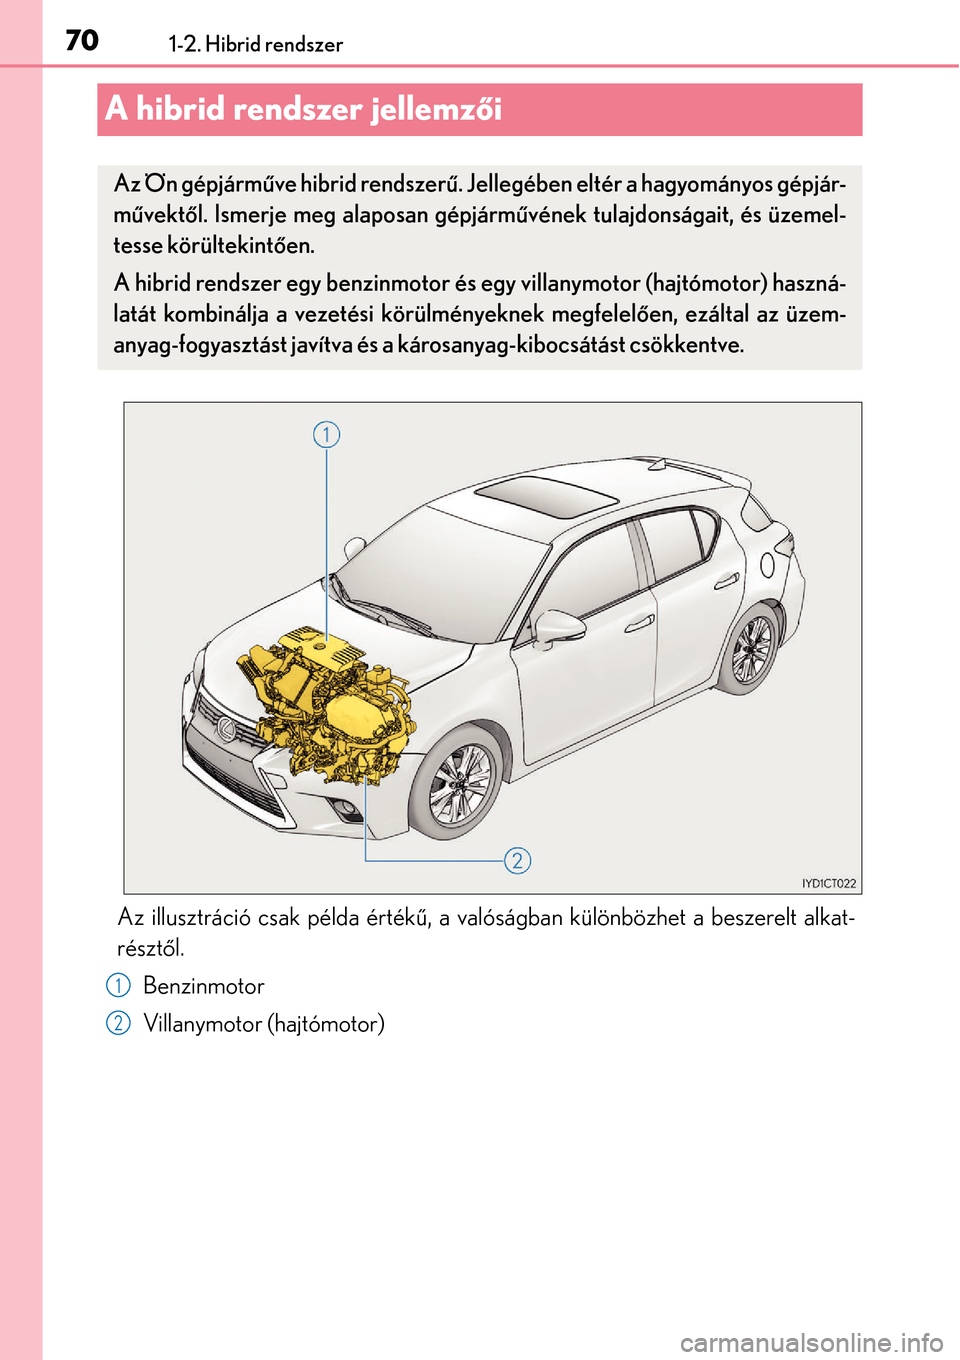 Lexus CT200h 2014  Kezelési útmutató (in Hungarian) 701-2. Hibrid rendszer
A hibrid rendszer jellemzői
Az illusztráció csak példa érték ű, a valóságban különbözhet a beszerelt alkat-
részt ől.
Benzinmotor
Villanymotor (hajtómotor)
Az Ön